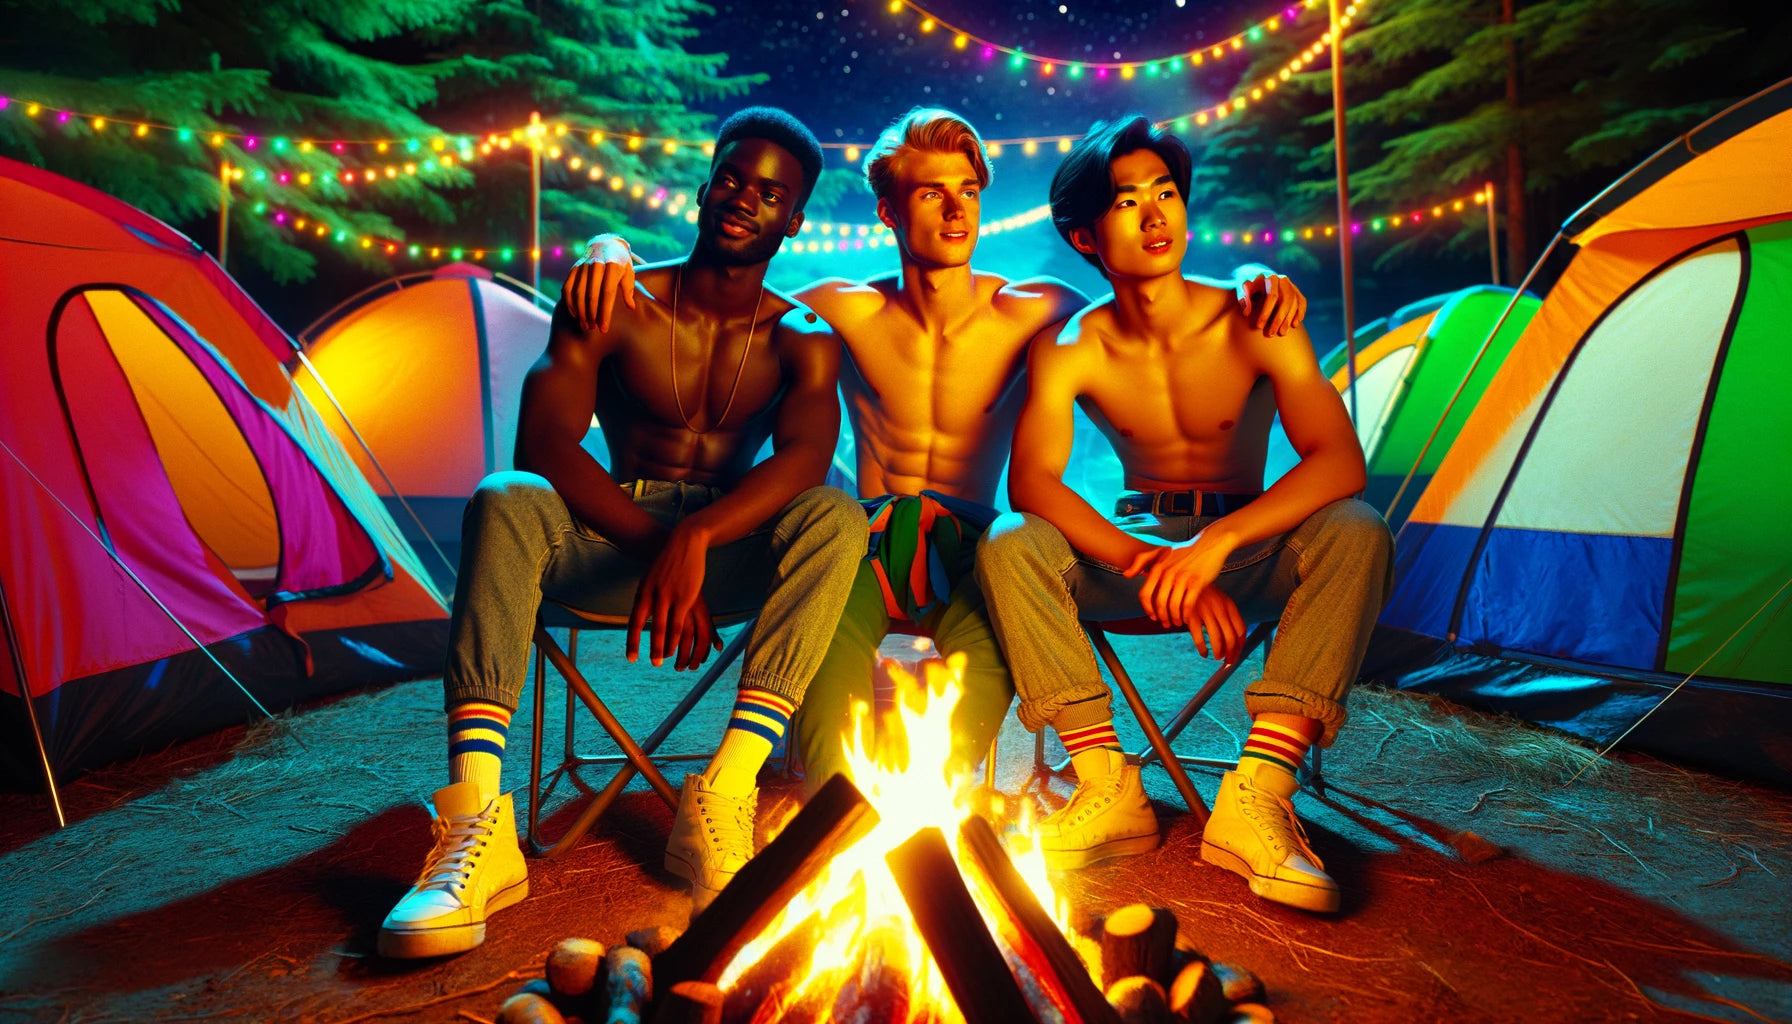 Conto Erótico Gozando a Três no Mato. Arte gerada por IA de três rapazes acampando, abraçados de frente para uma fogueira.